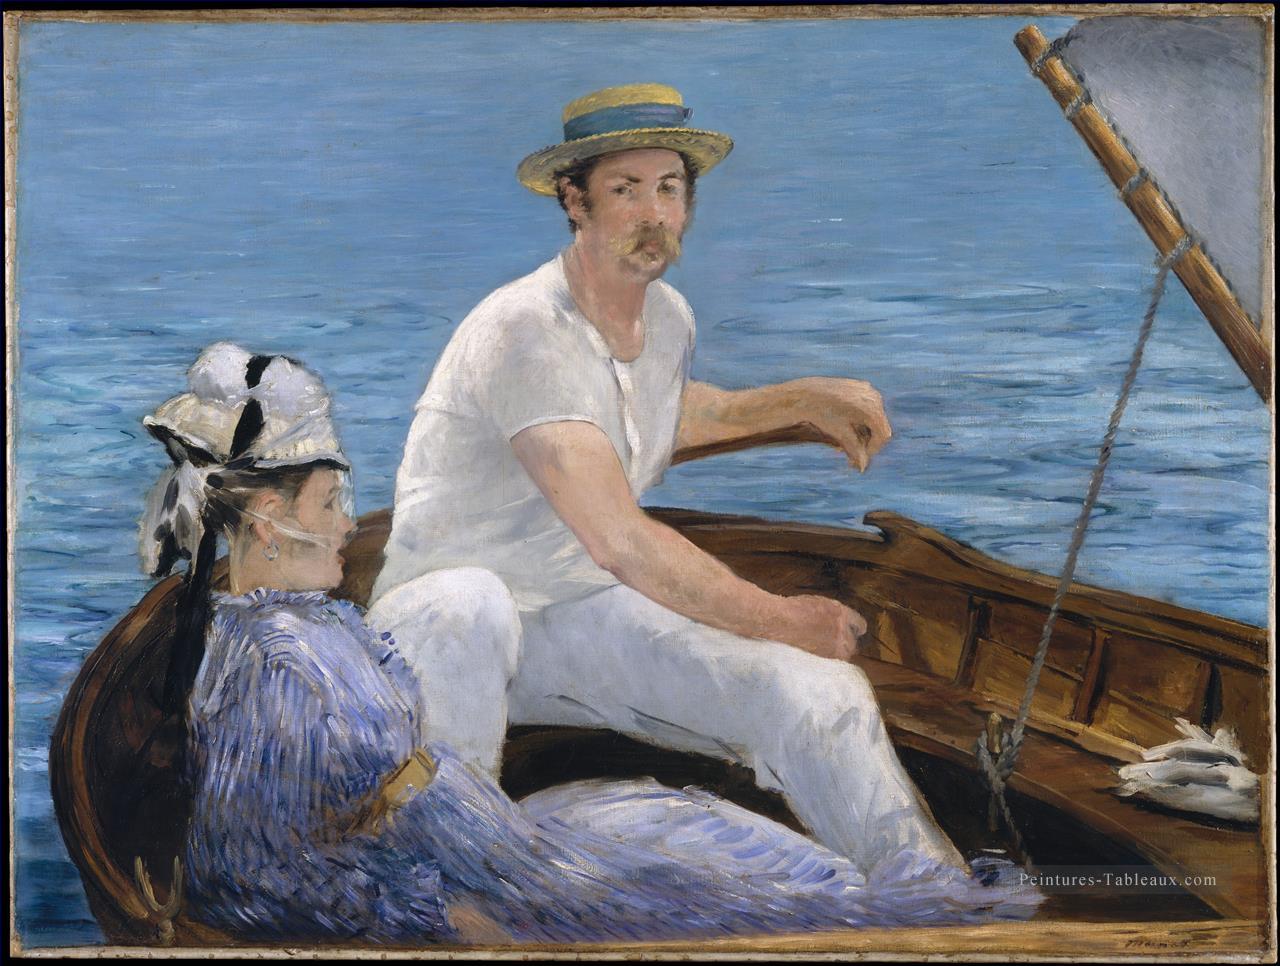 Bateau réalisme impressionnisme Édouard Manet Peintures à l'huile